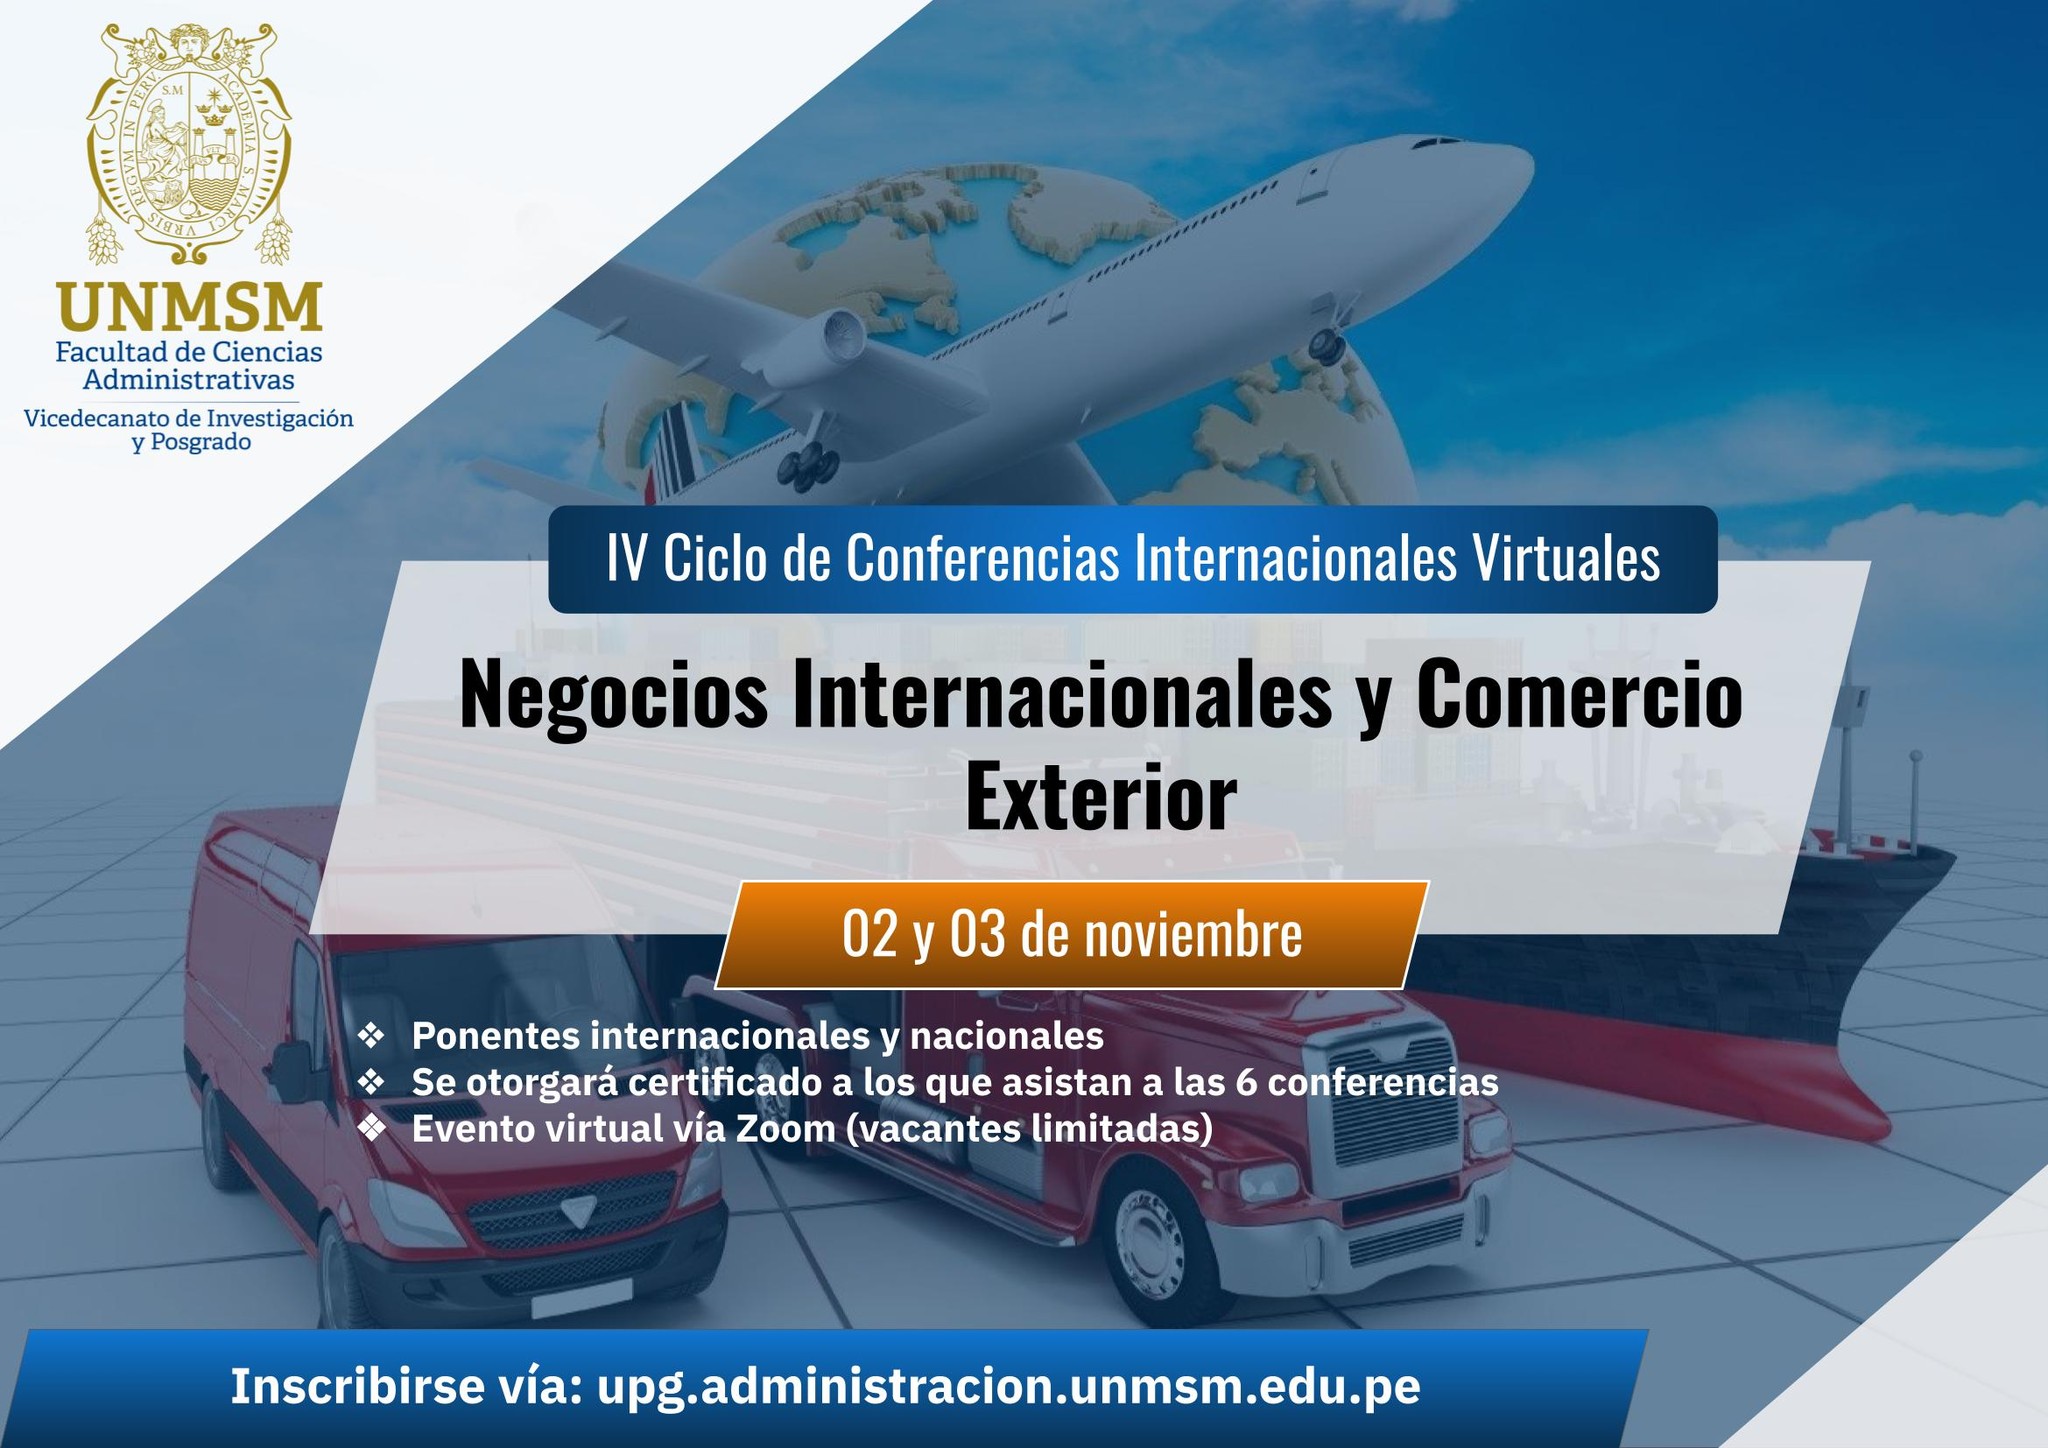 IV Ciclo de Conferencias Internacionales Virtuales «Negocios Internacionales y Comercio Exterior»